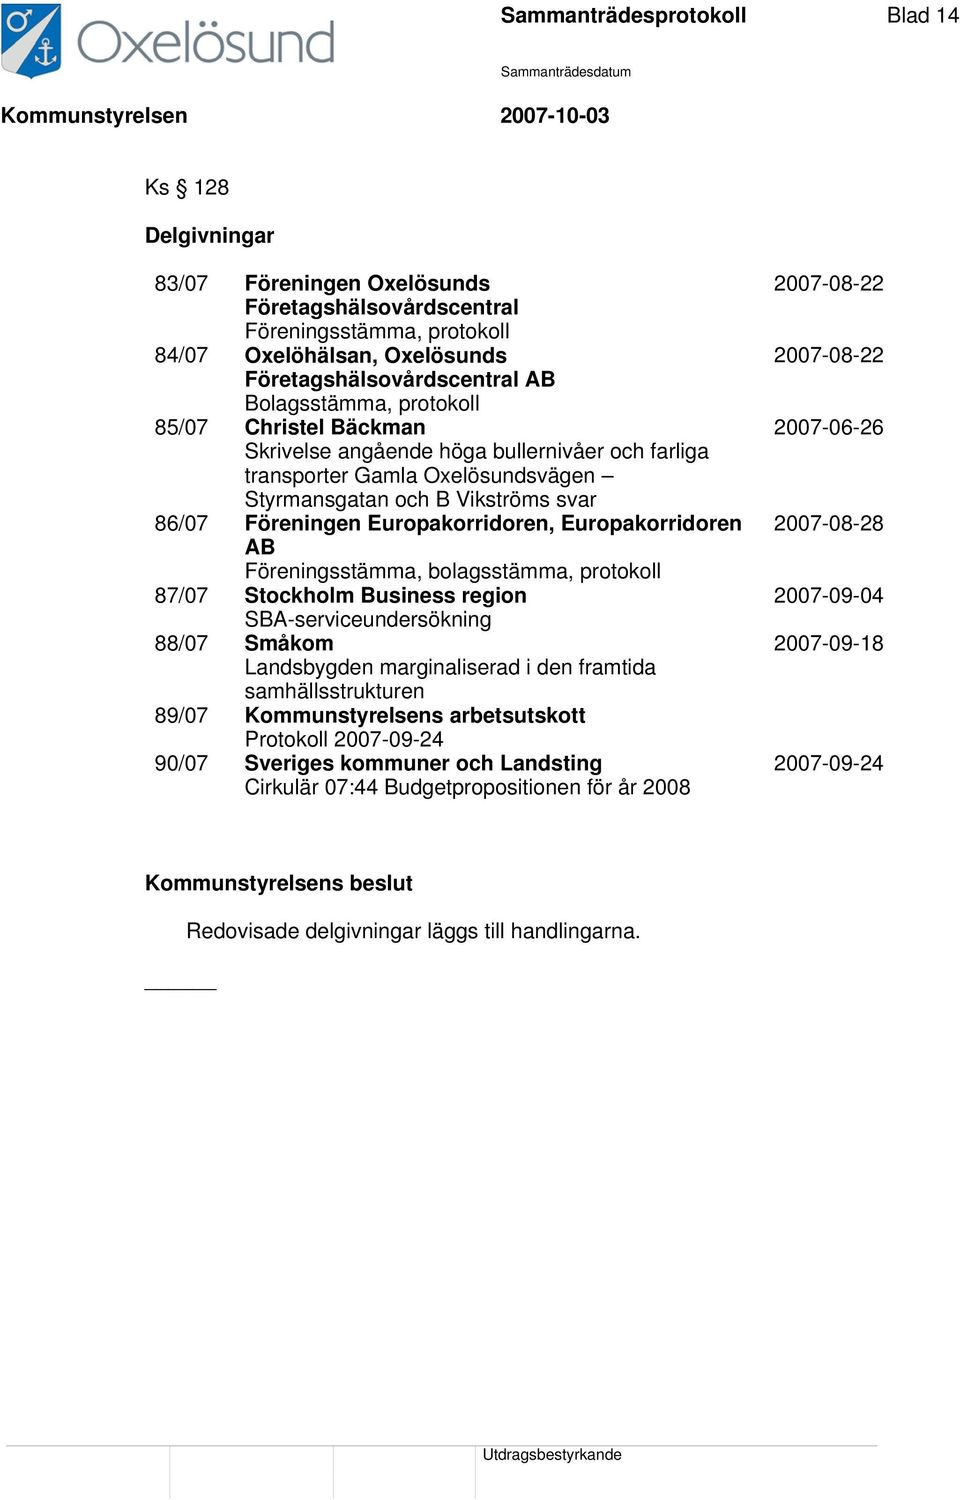 Europakorridoren AB Föreningsstämma, bolagsstämma, protokoll 87/07 Stockholm Business region SBA-serviceundersökning 88/07 Småkom Landsbygden marginaliserad i den framtida samhällsstrukturen 89/07